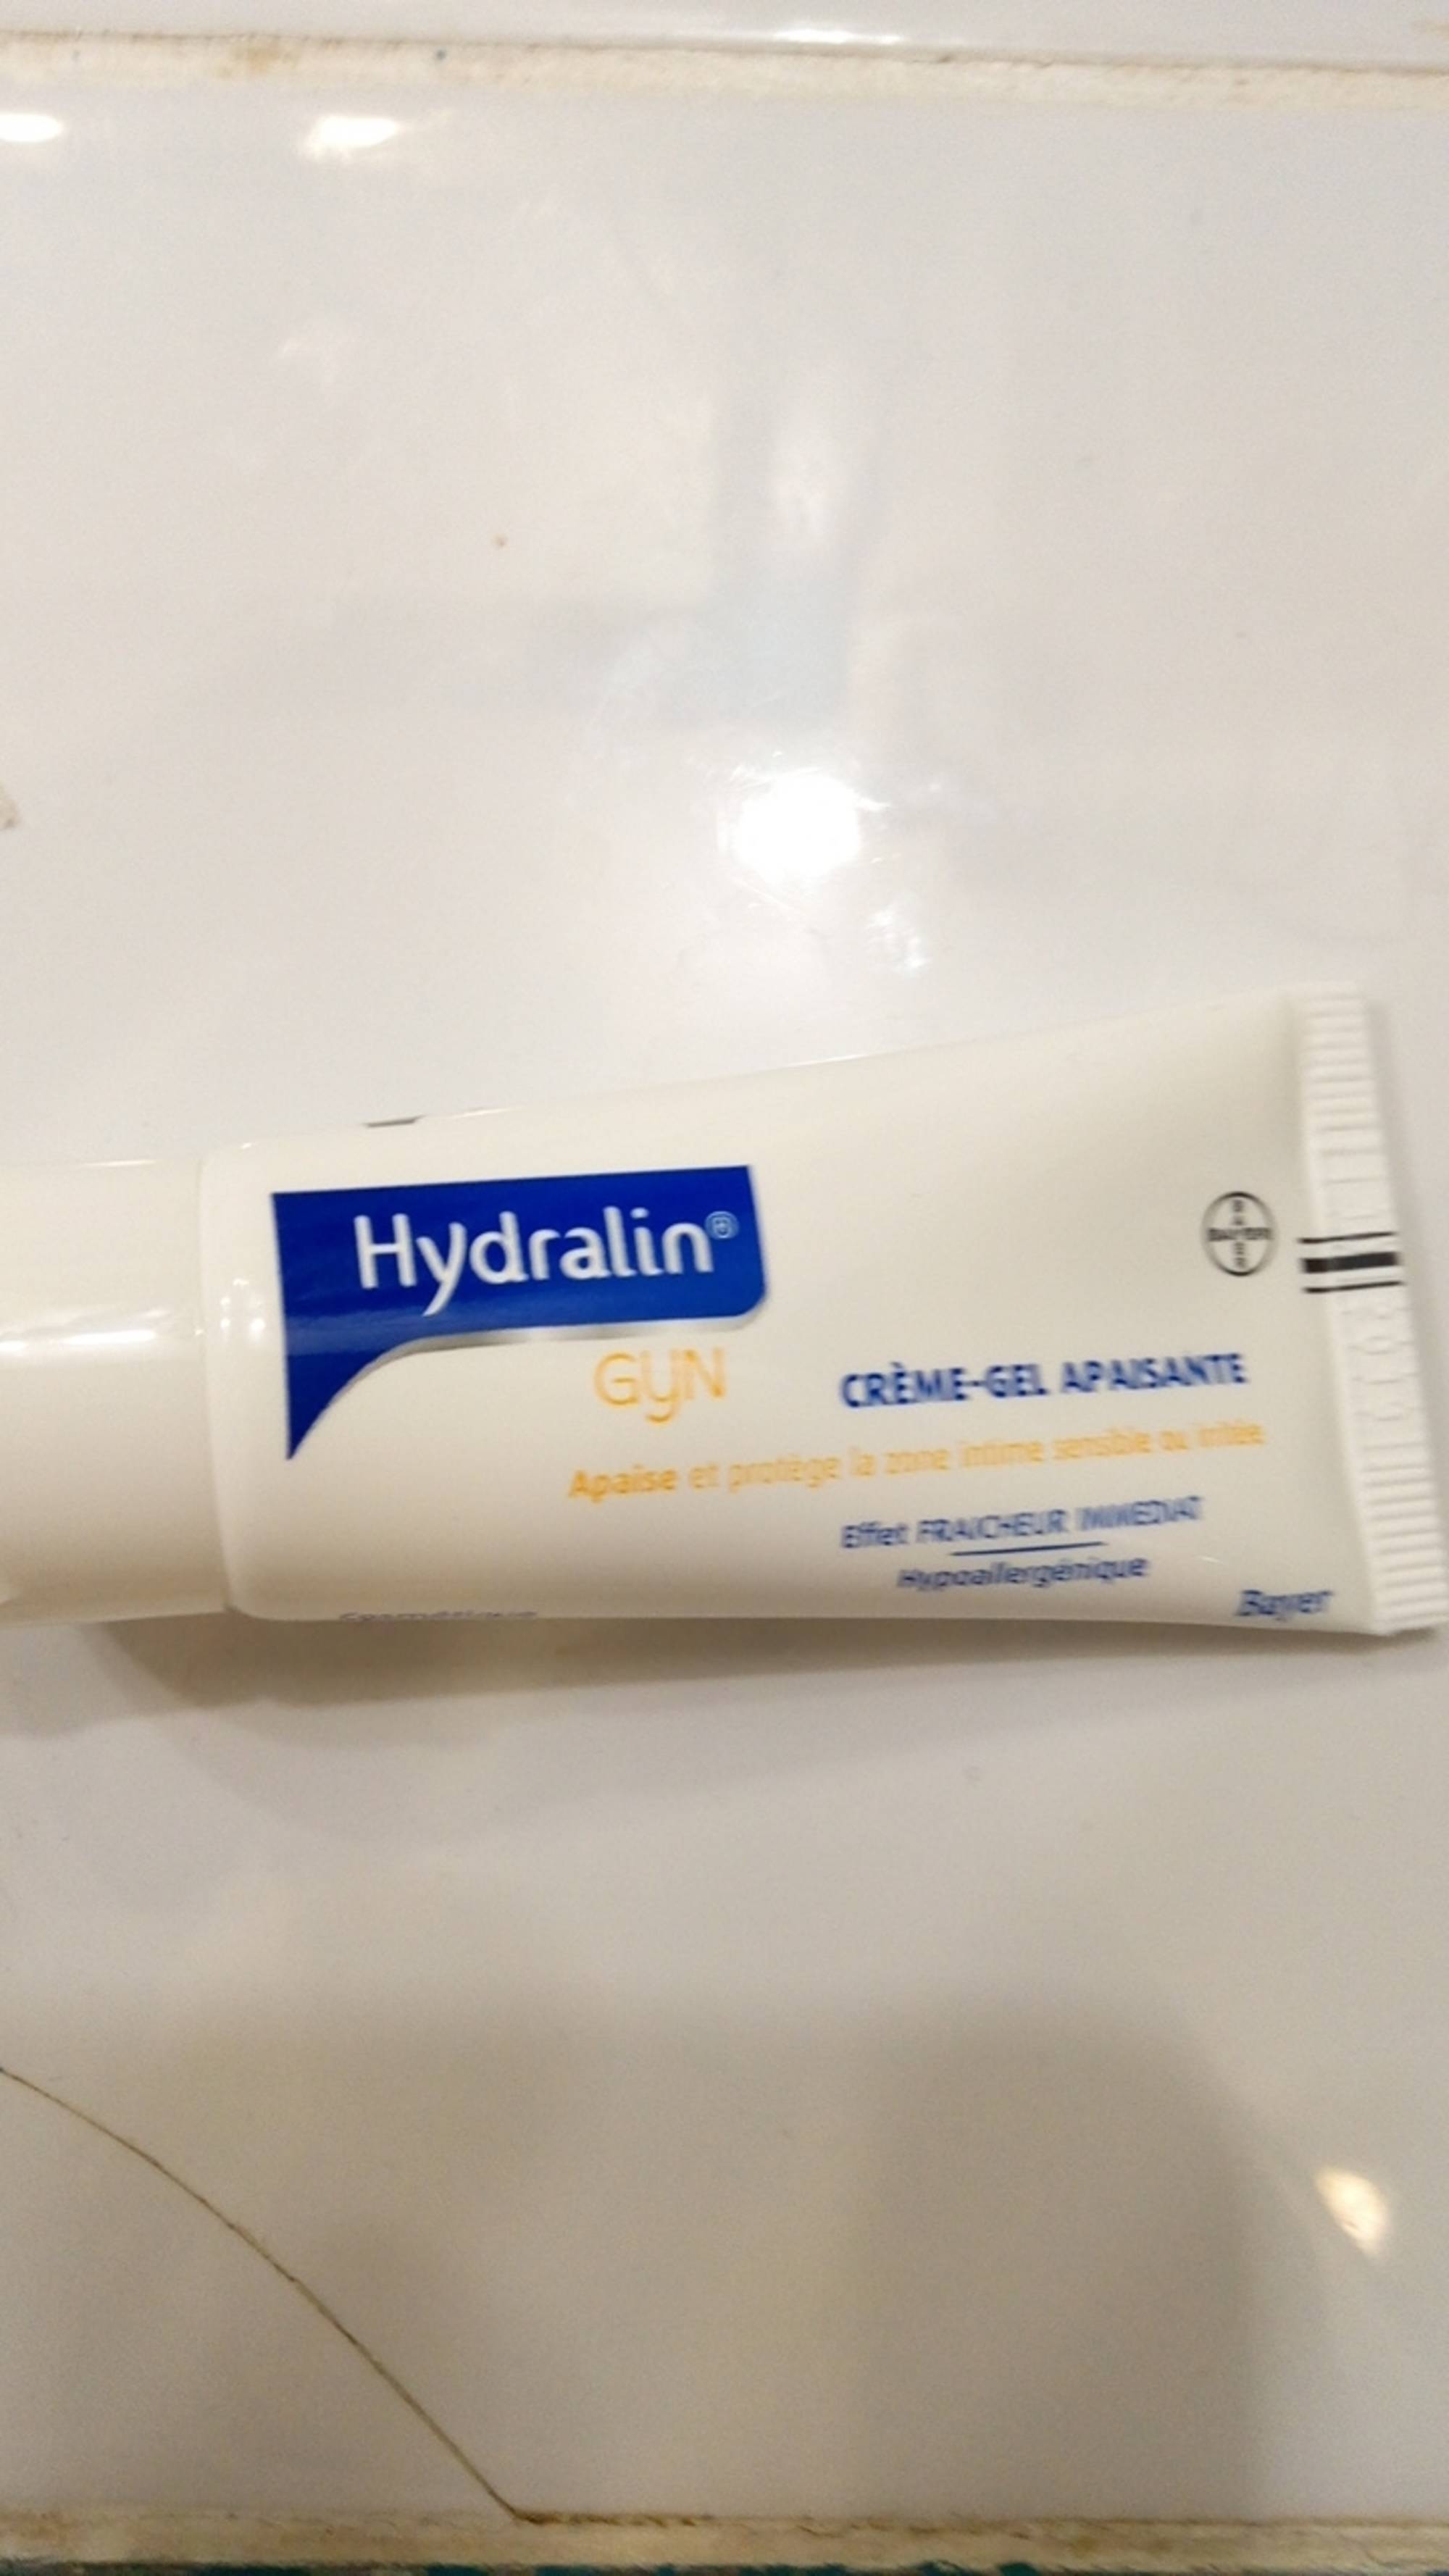 HYDRALIN - GYN - Crème-gel apaisante